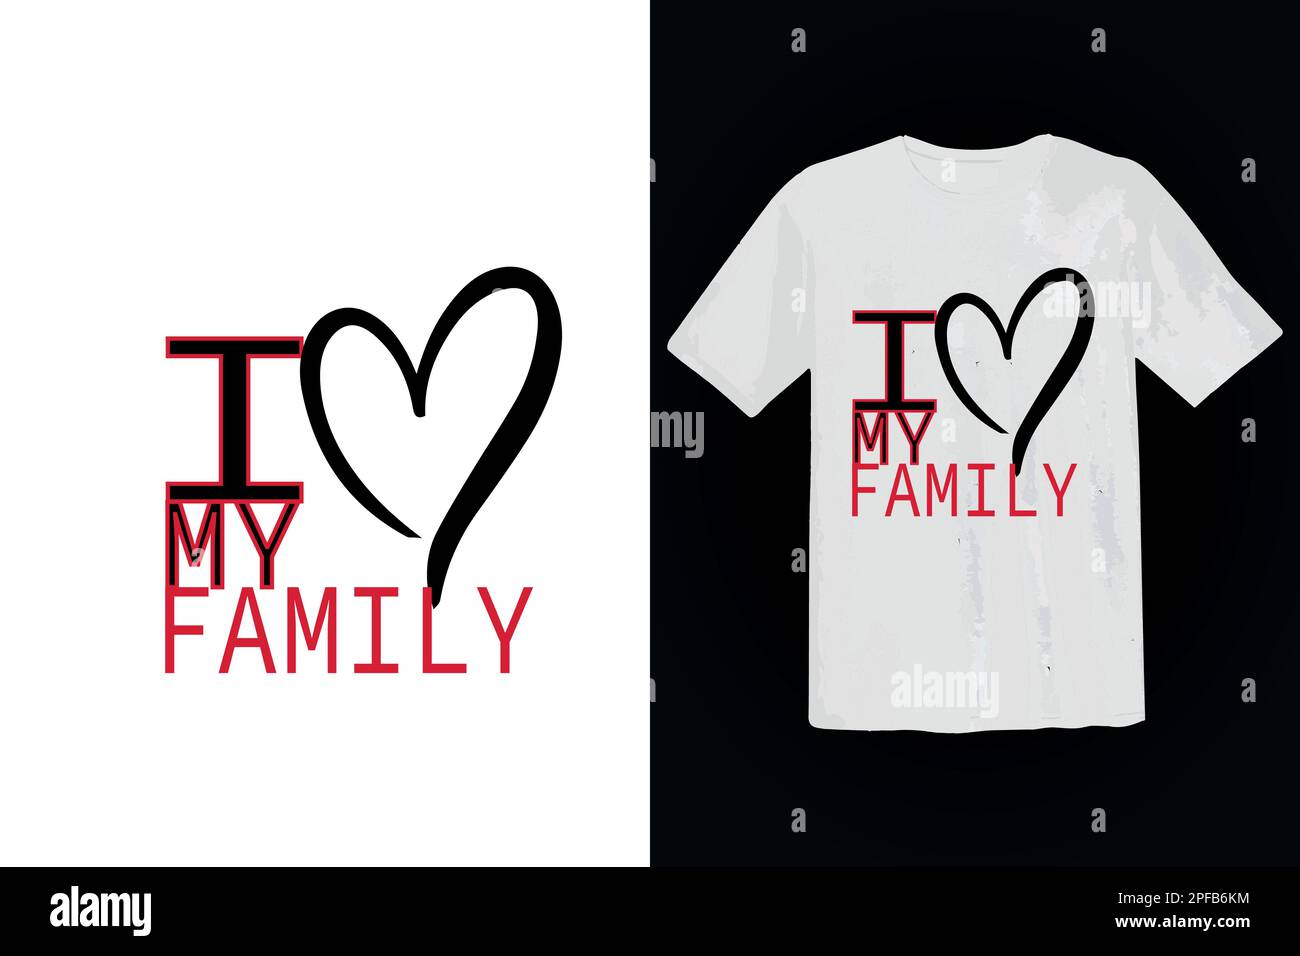 i love my family t shirt design template illustrator Stock Vector